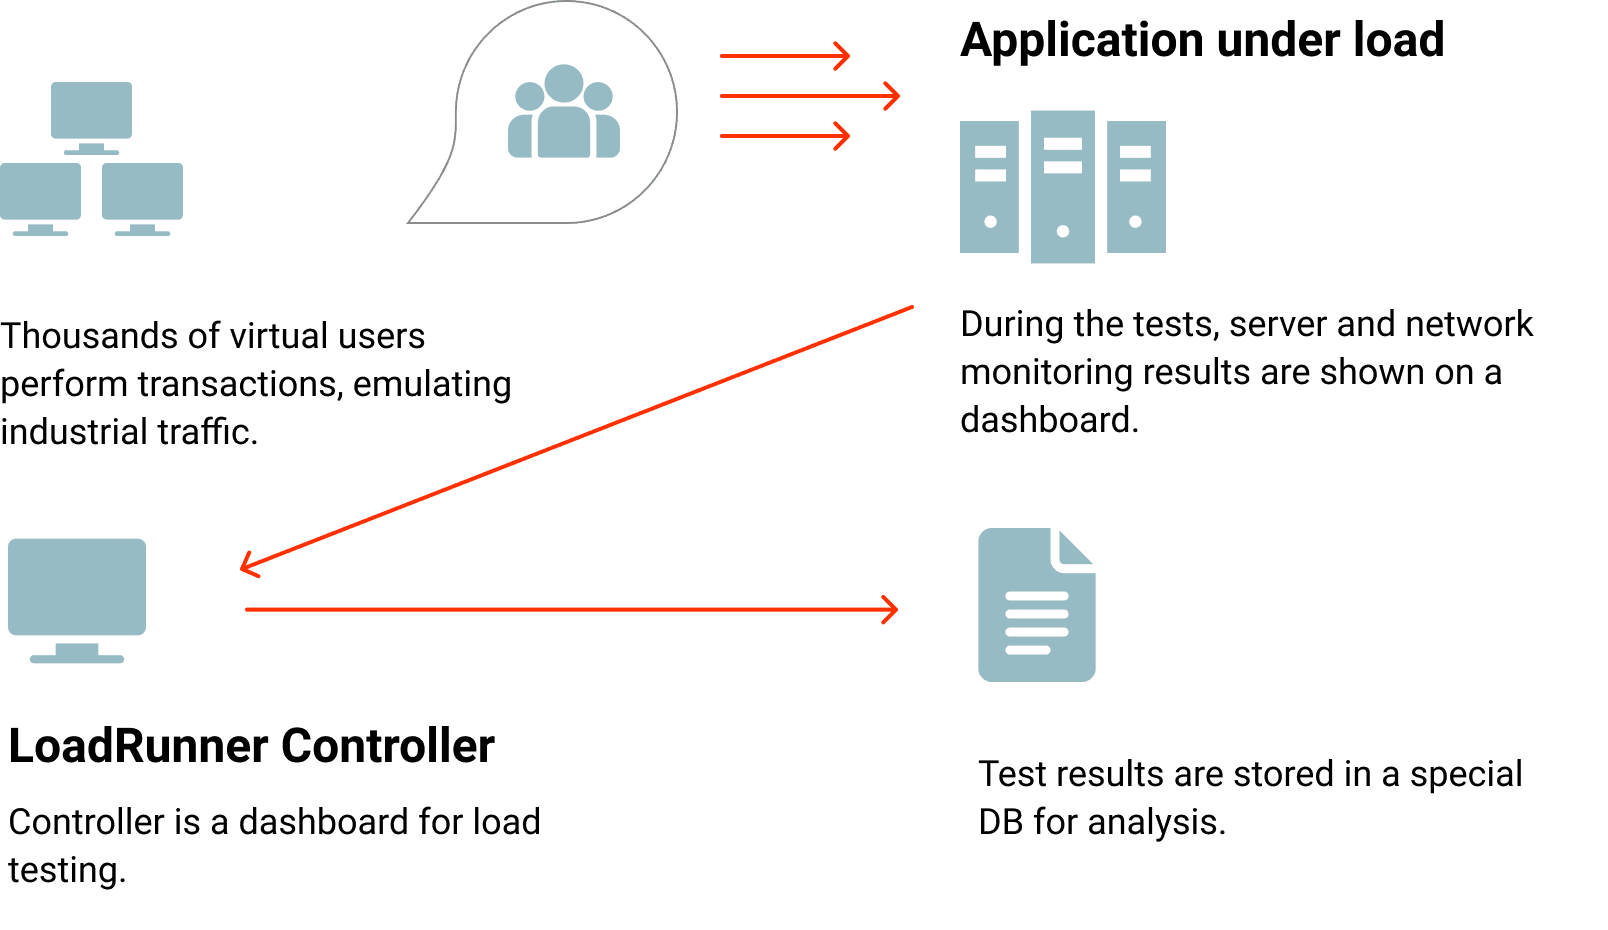 ivr load testing application under load